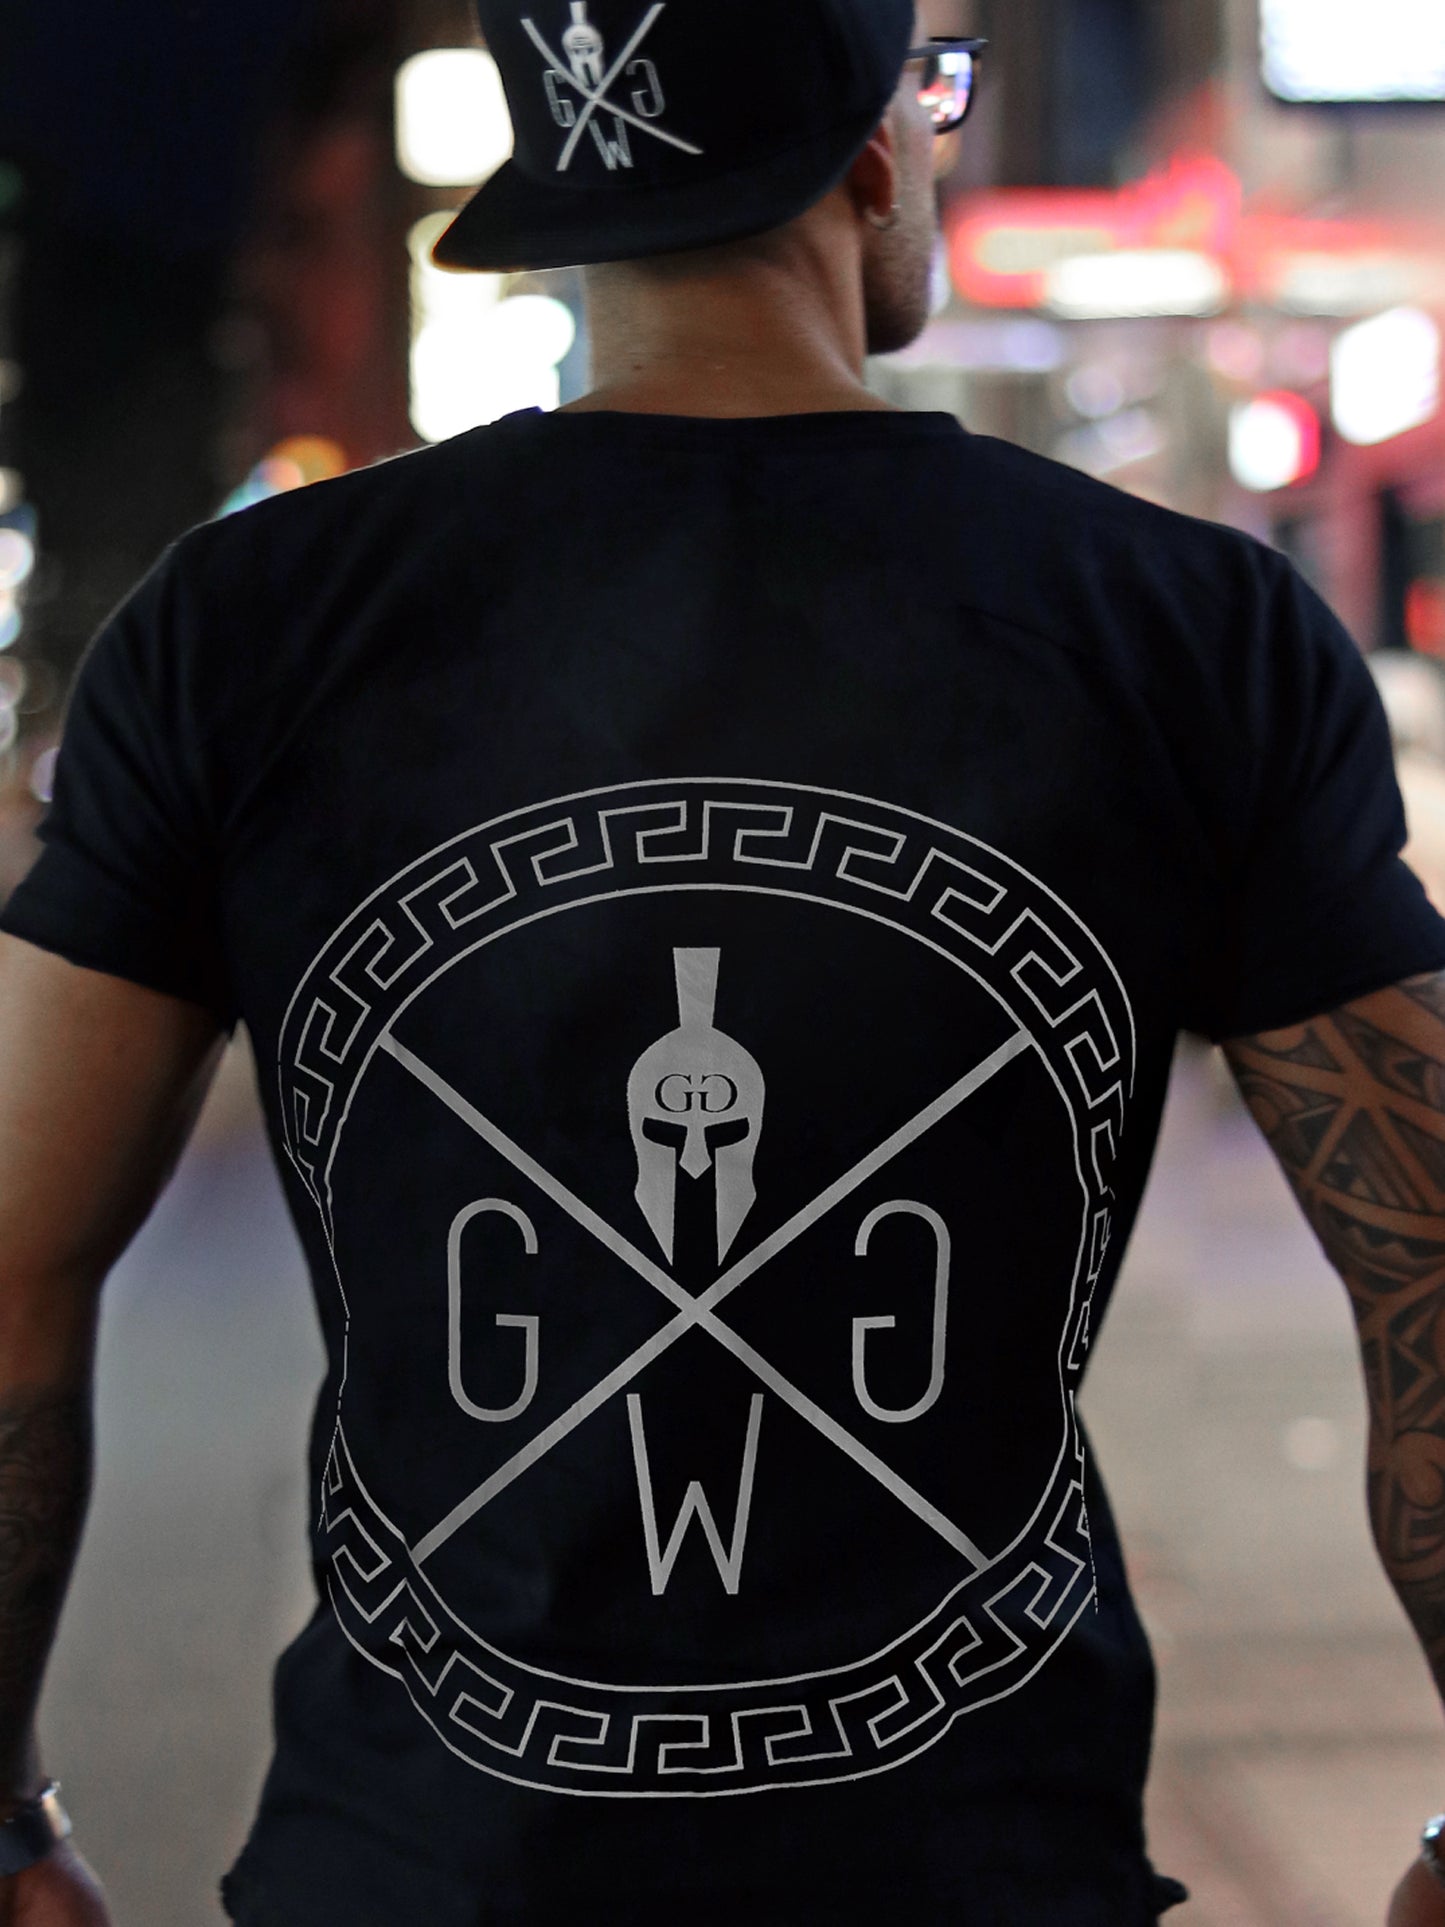 Beeindruckendes Spartan T-Shirt von Gym Generation, zeigt Stärke und dominante Ausstrahlung.